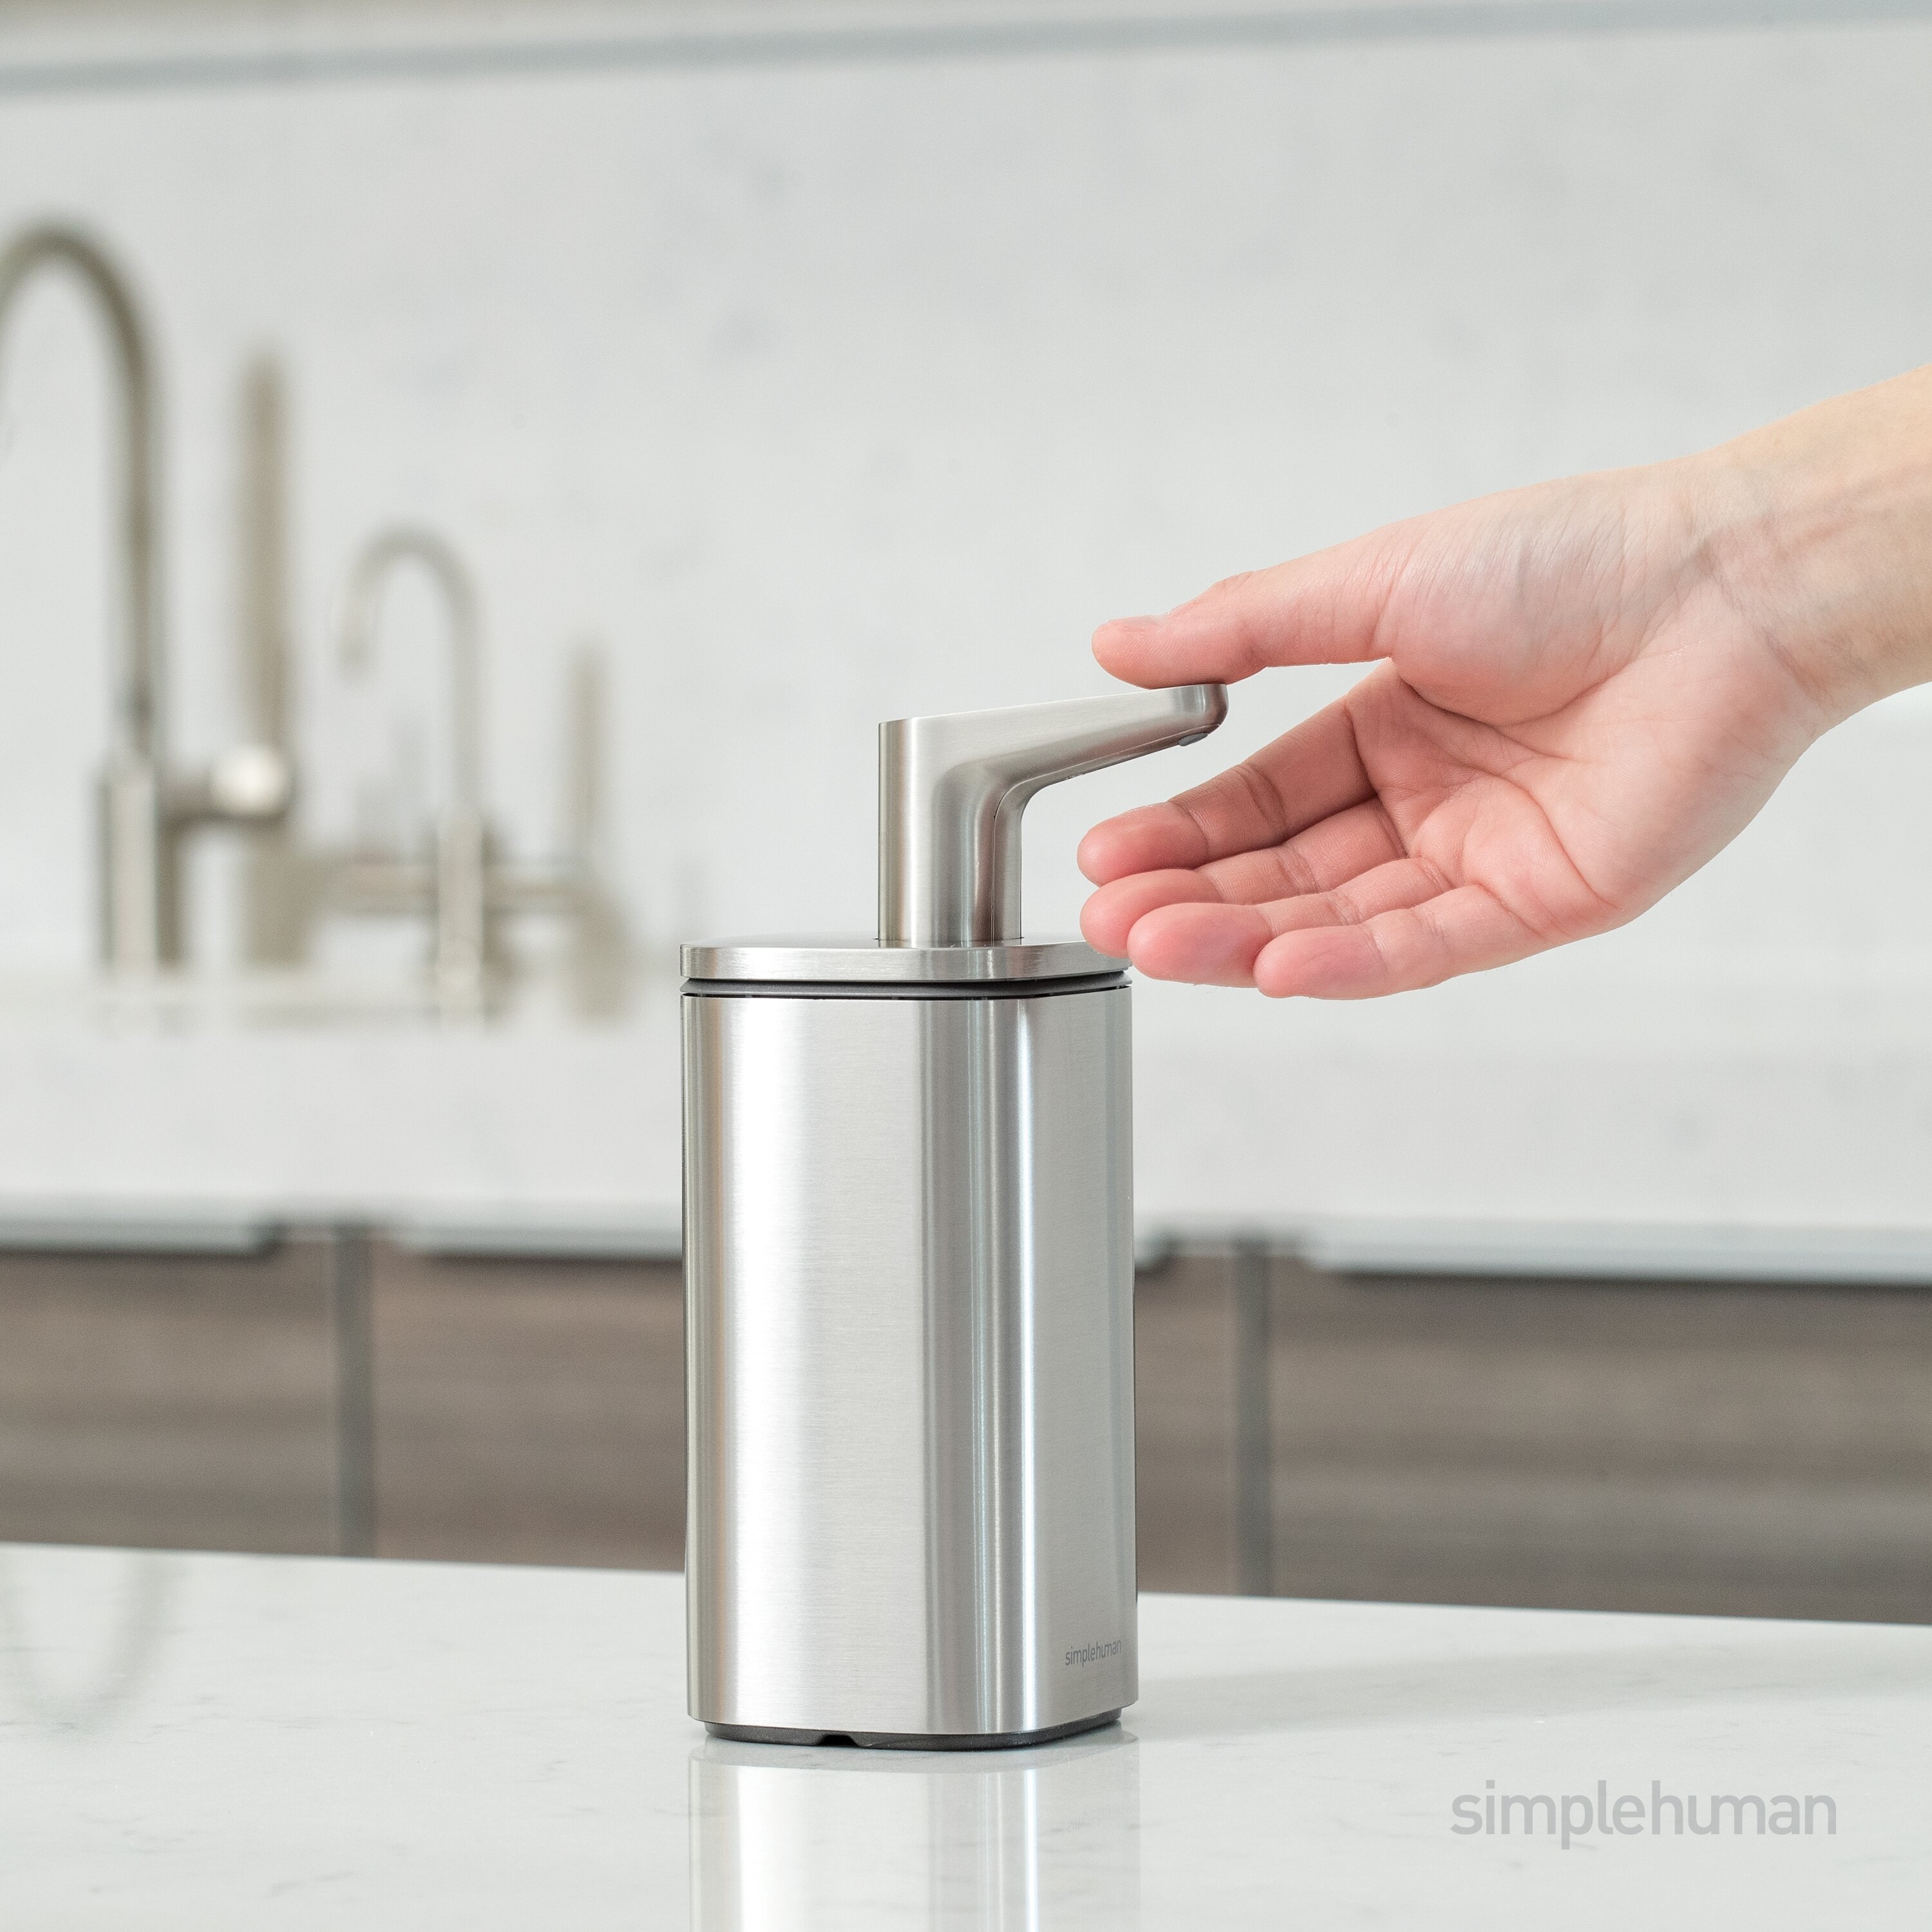 Simplehuman 10 oz. Liquid Soap Pulse Pump Dispenser, Brushed